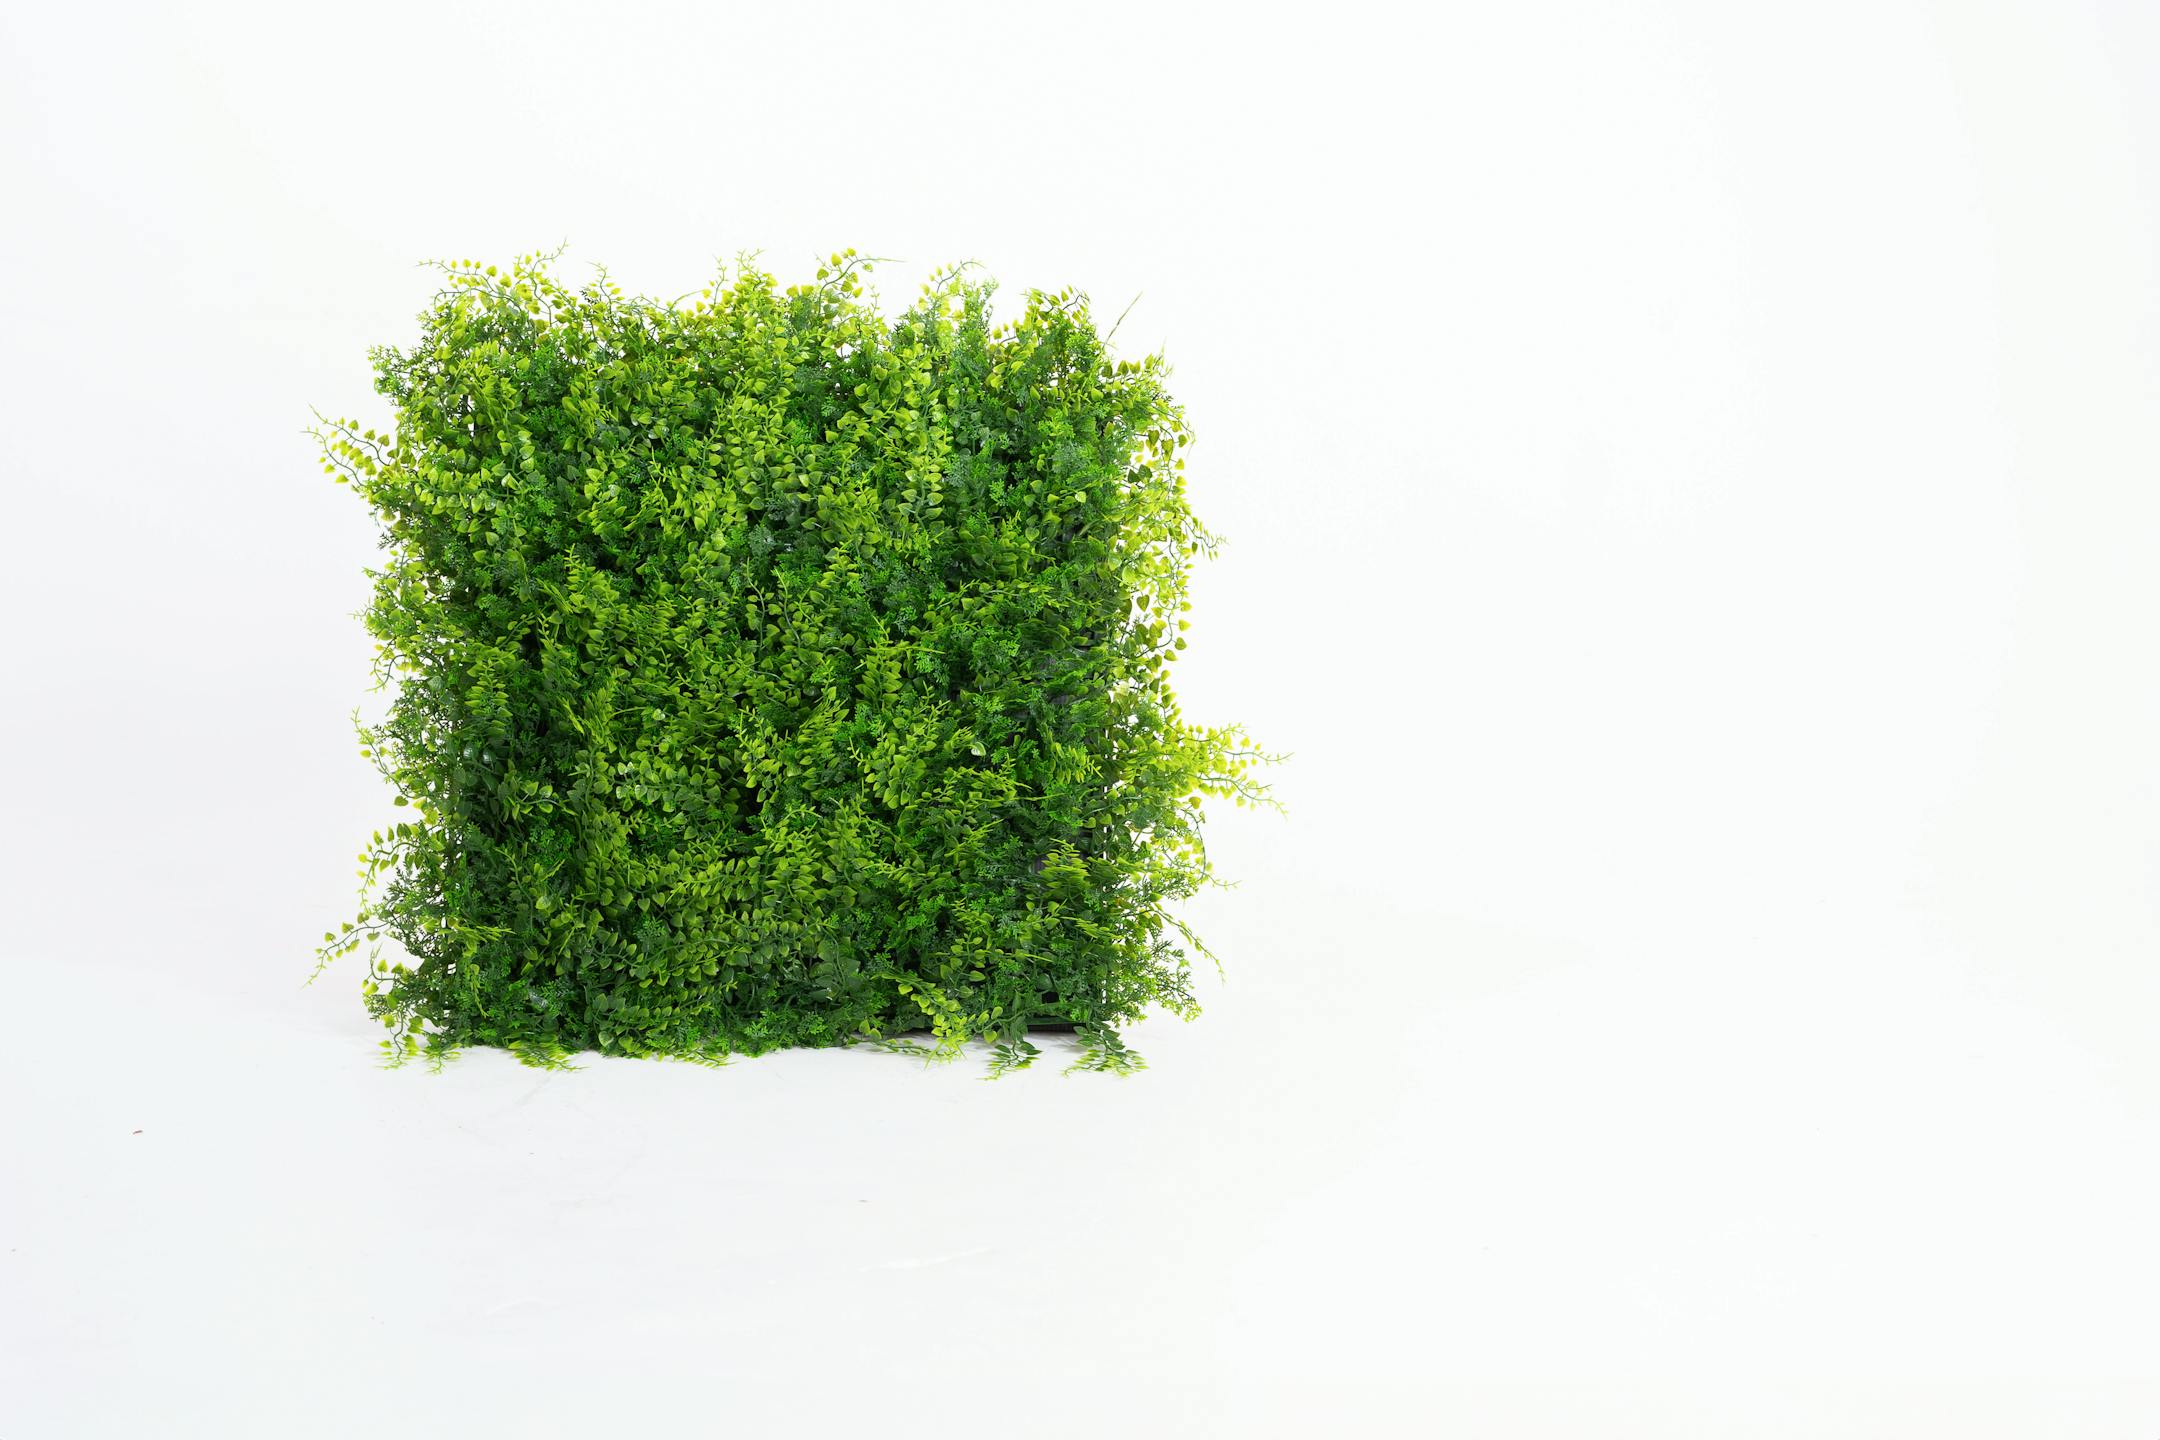 Artificial fern foliage living wall mat